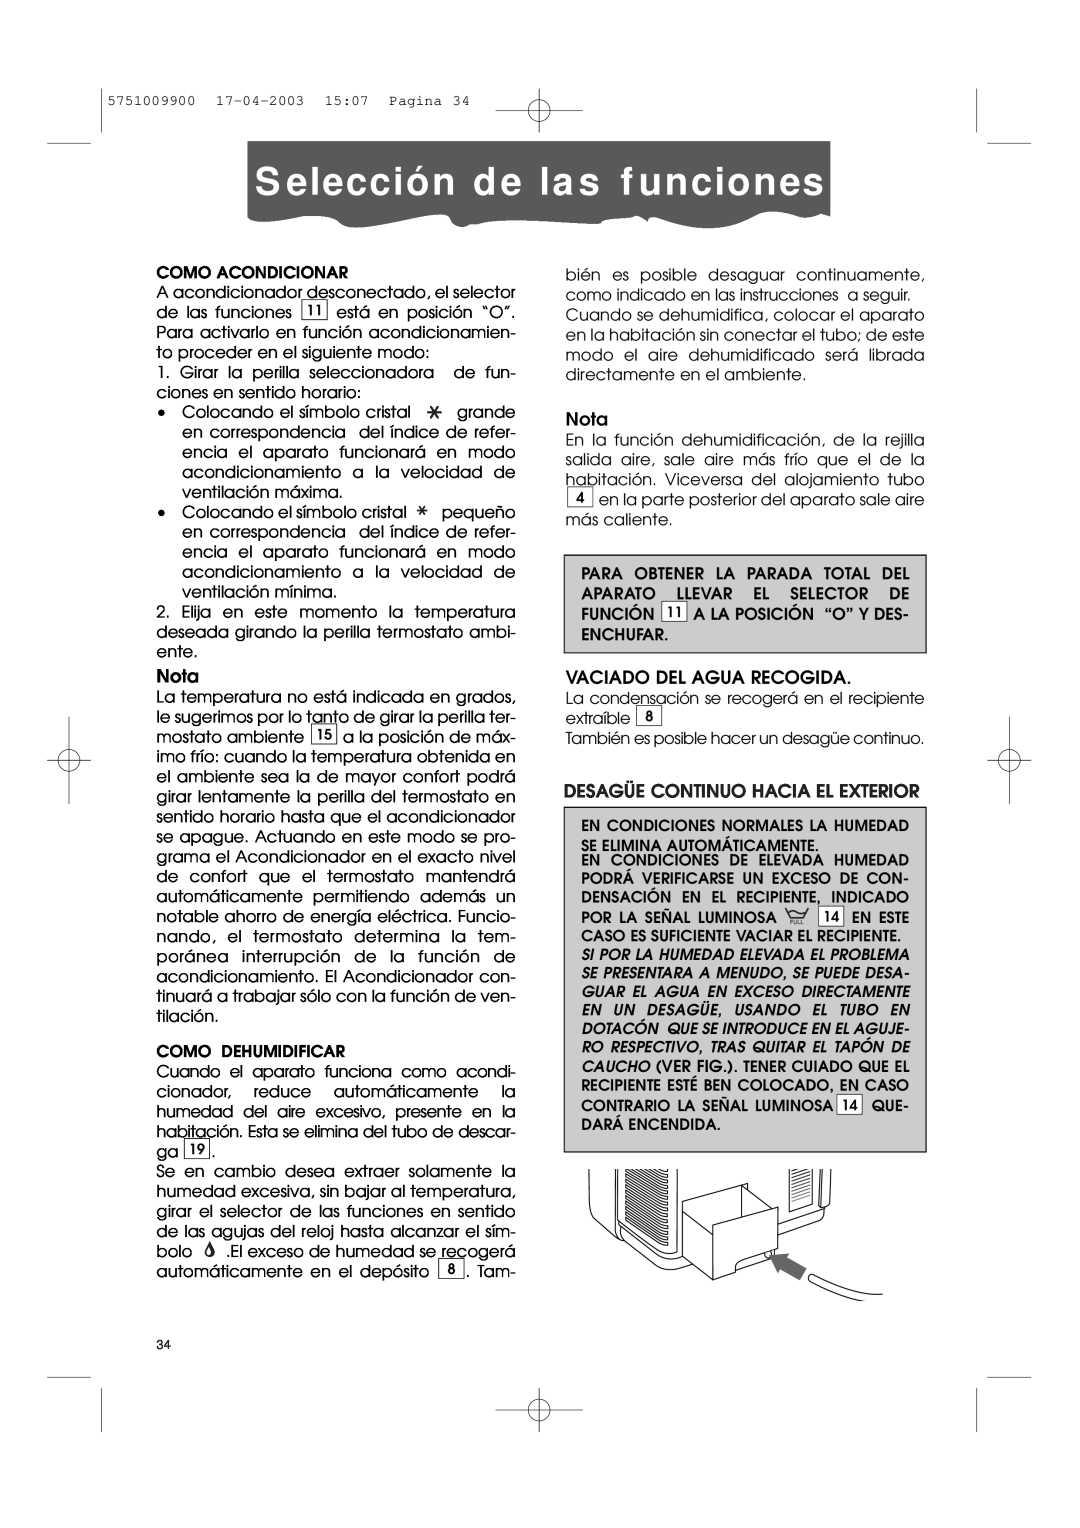 DeLonghi Pac 1000 manual Selección de las funciones, Nota, Vaciado Del Agua Recogida, Desagüe Continuo Hacia El Exterior 